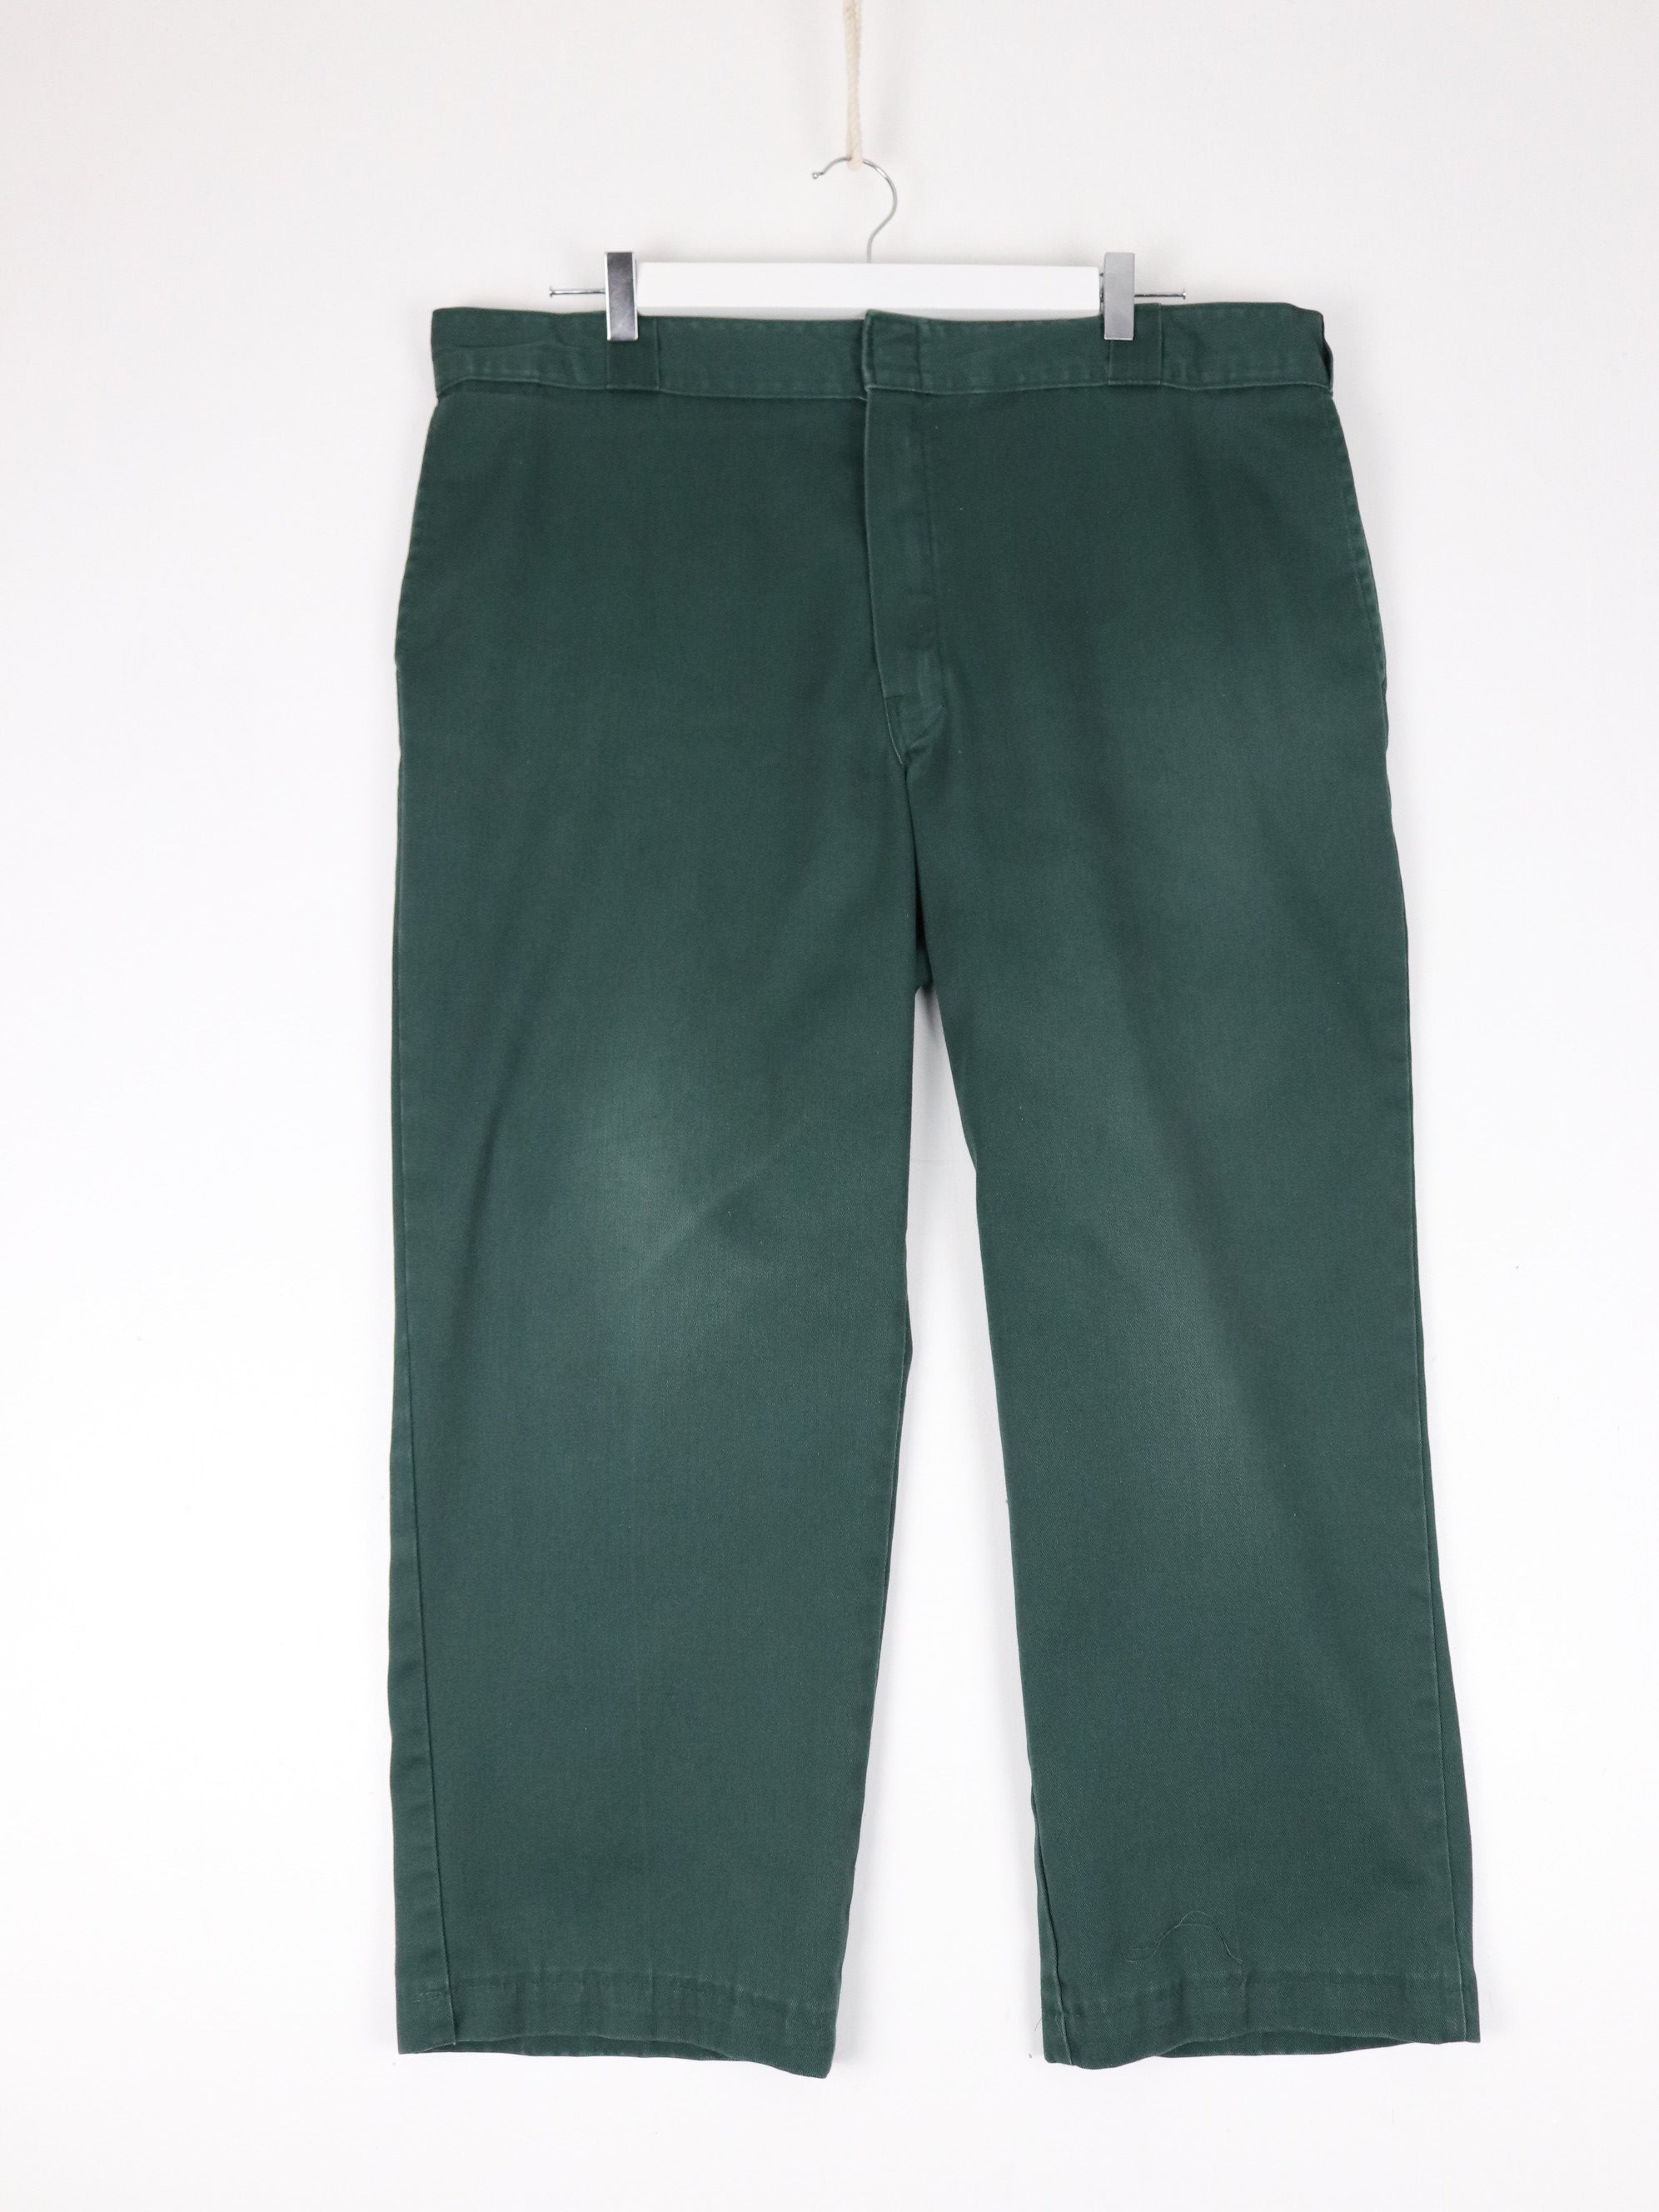 Dickies Pants Mens 38 x 25 Green 874 Chino Work Wear – Proper Vintage